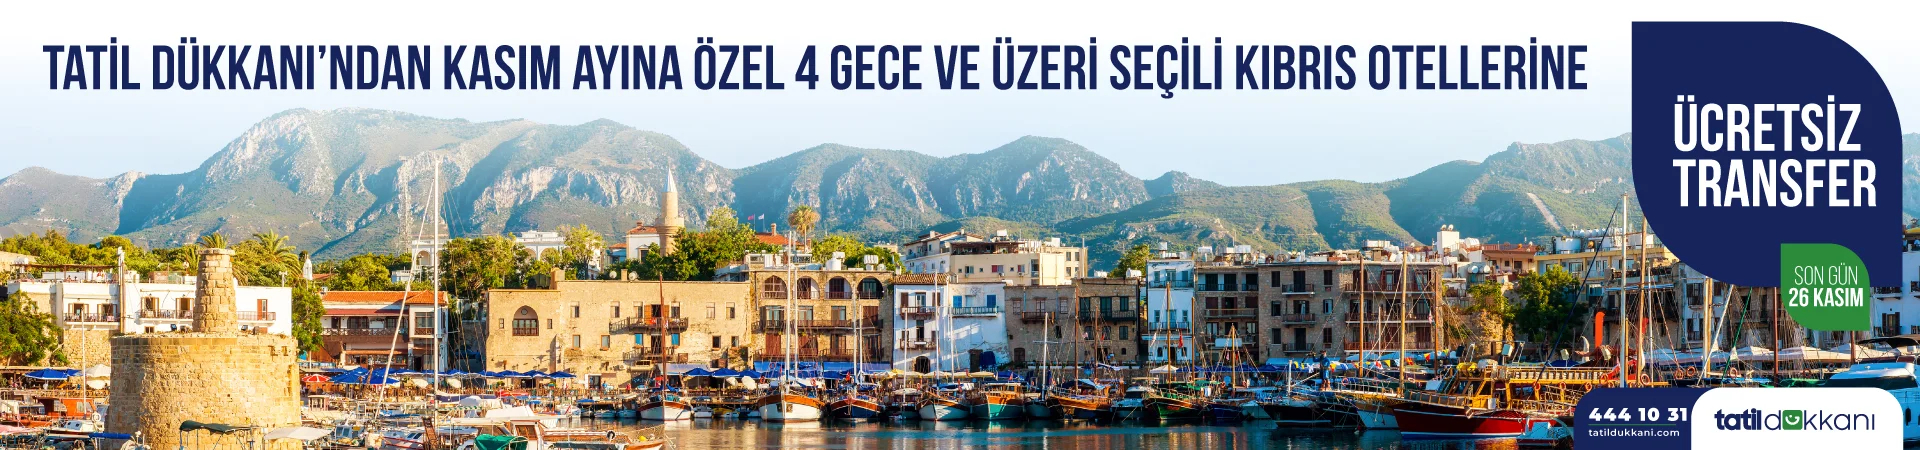 Kıbrıs Otellerine Özel Ücretsiz Transfer Kampanyası